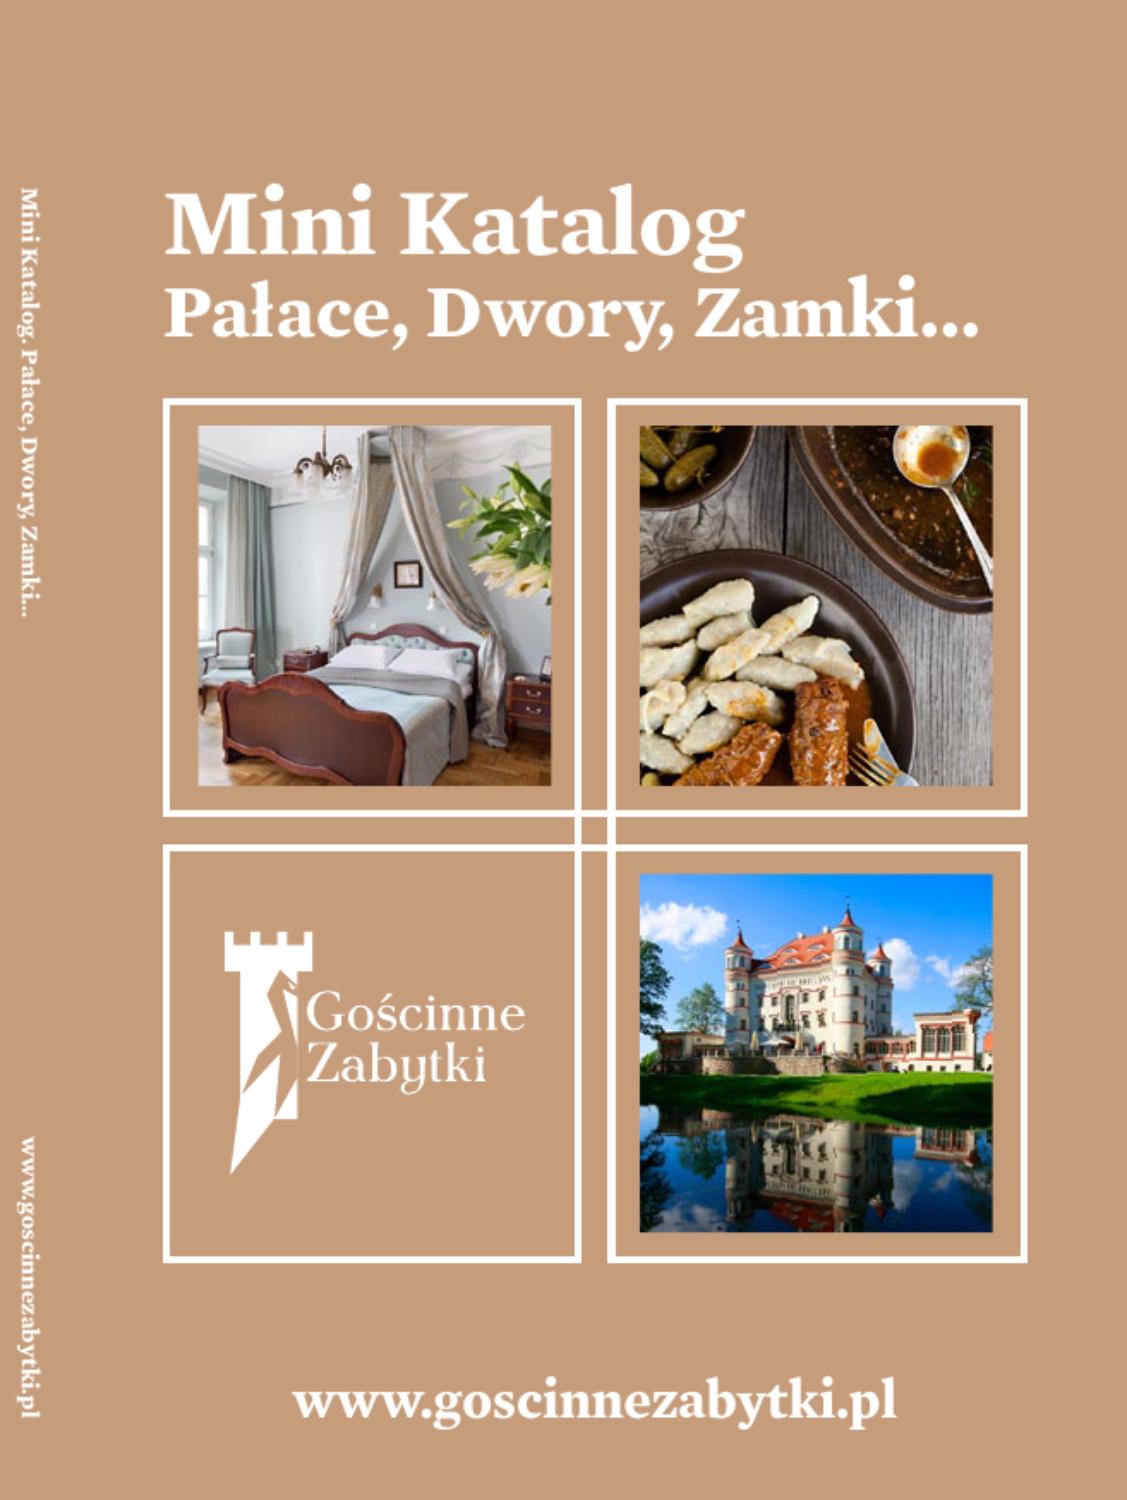 Gartenplaner Online Genial Mini Katalog Palace Dwory Zamki by Bodo Kaniewski issuu